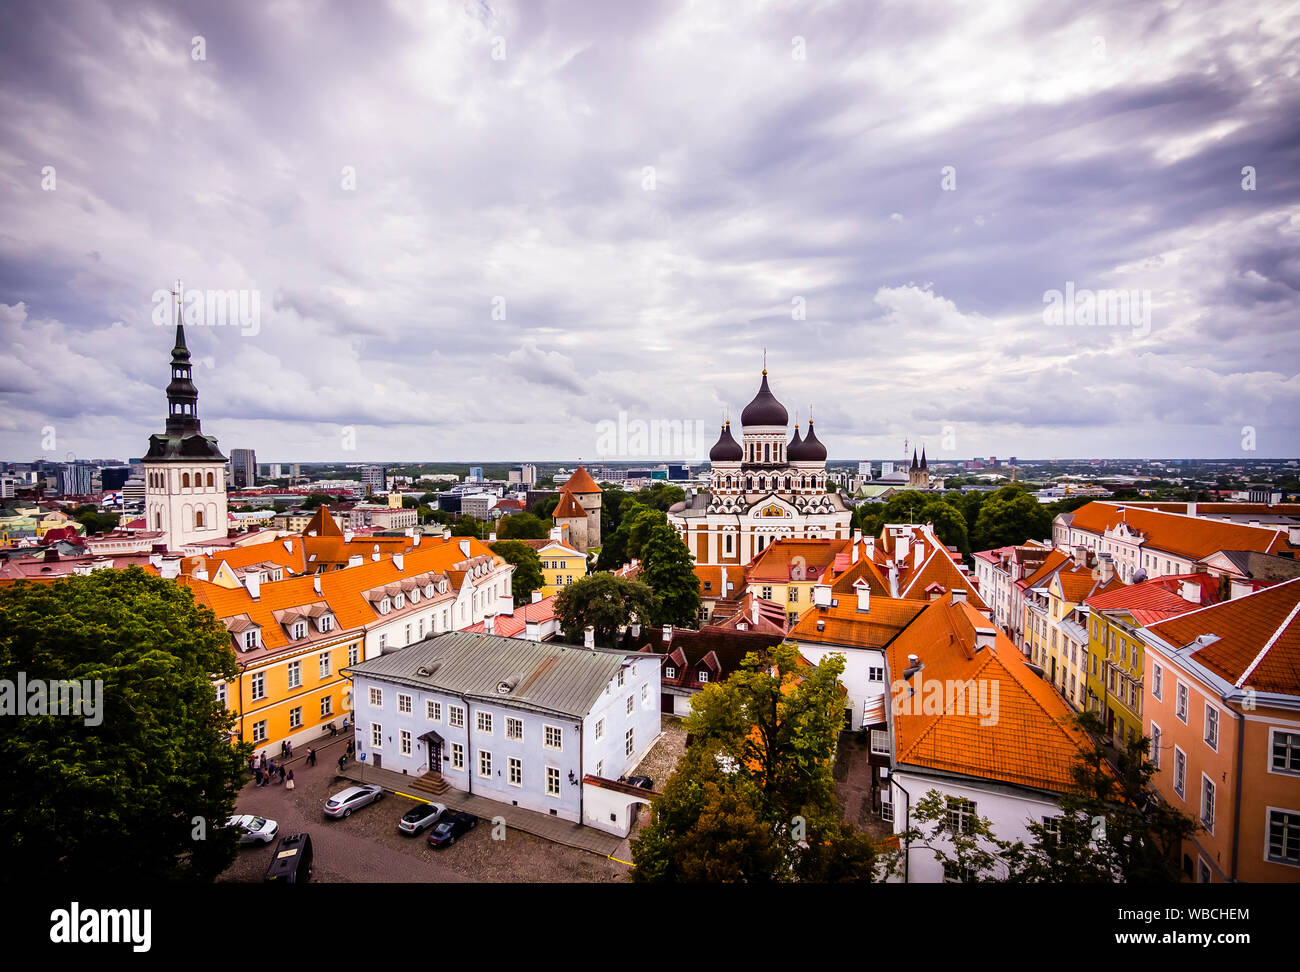 Splendido skyline della città vecchia di Tallinn con la Cattedrale Alexander Nevsky Foto Stock